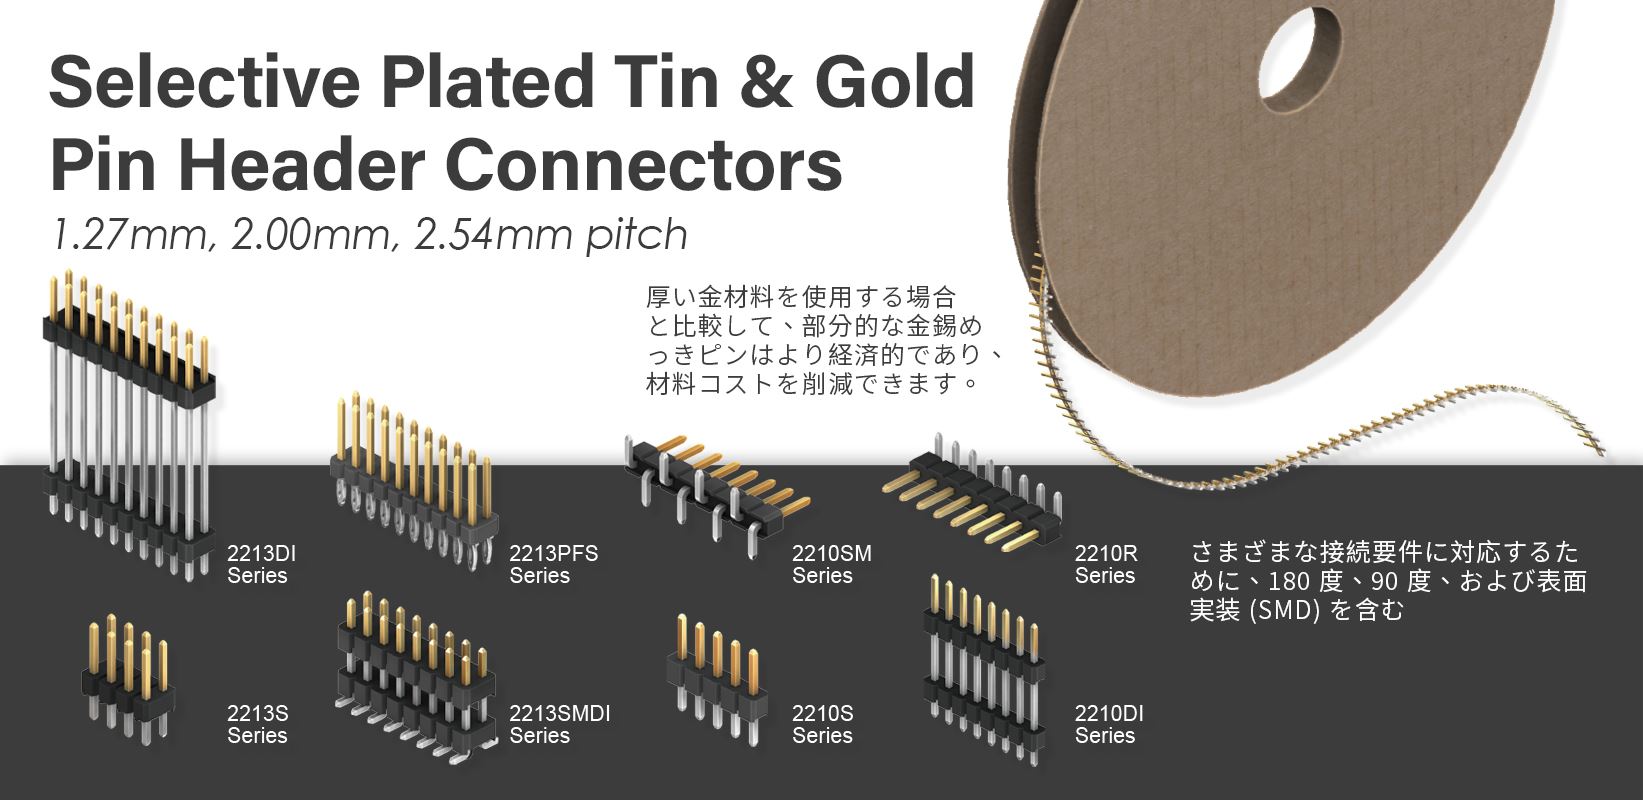 Selective Plated Tin & Gold Pin Header